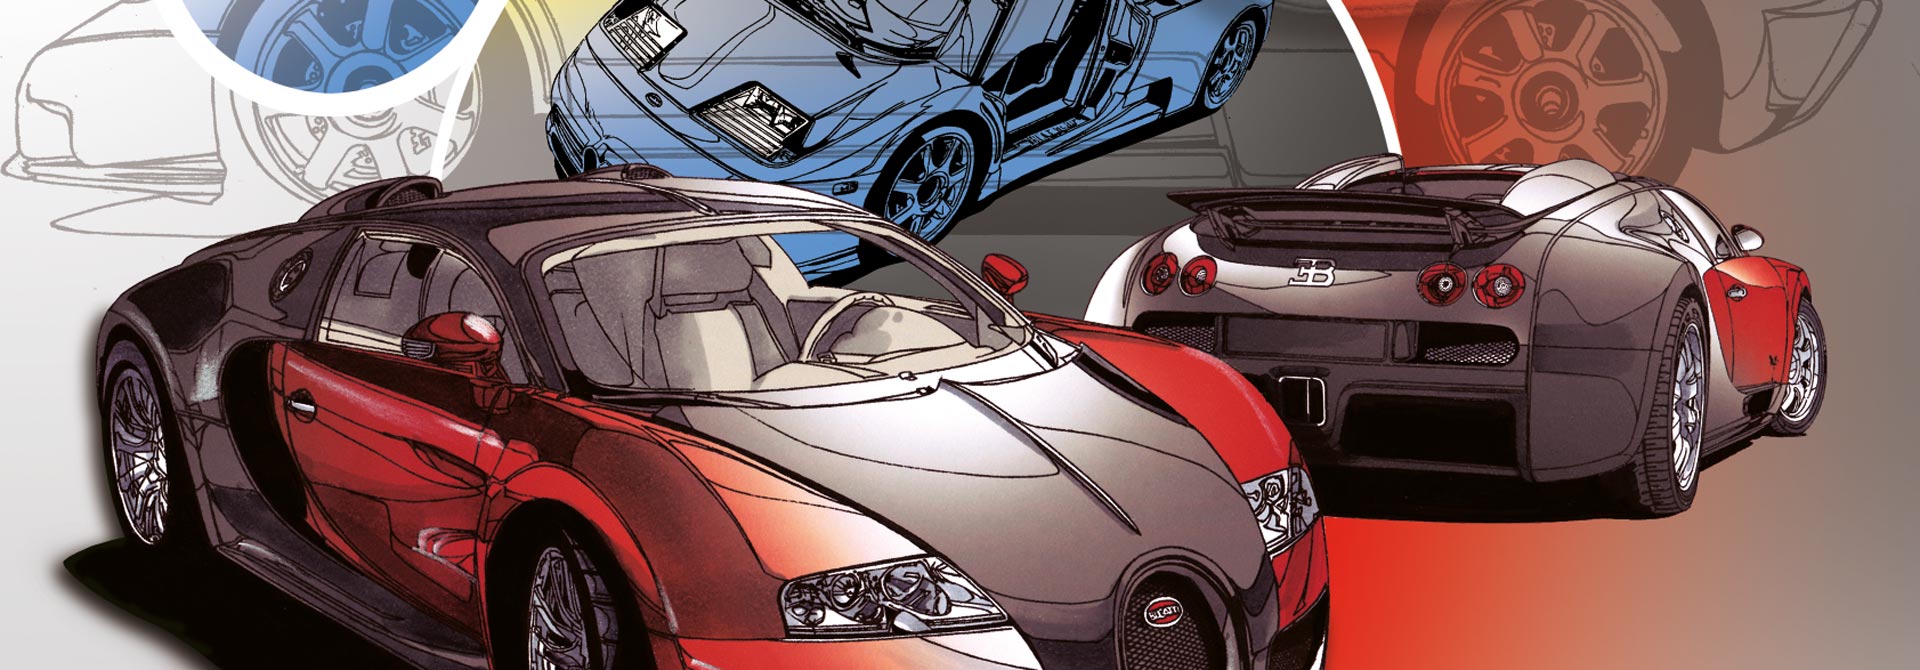 Bildausschnitt "Bugatti" für den Headerbereich